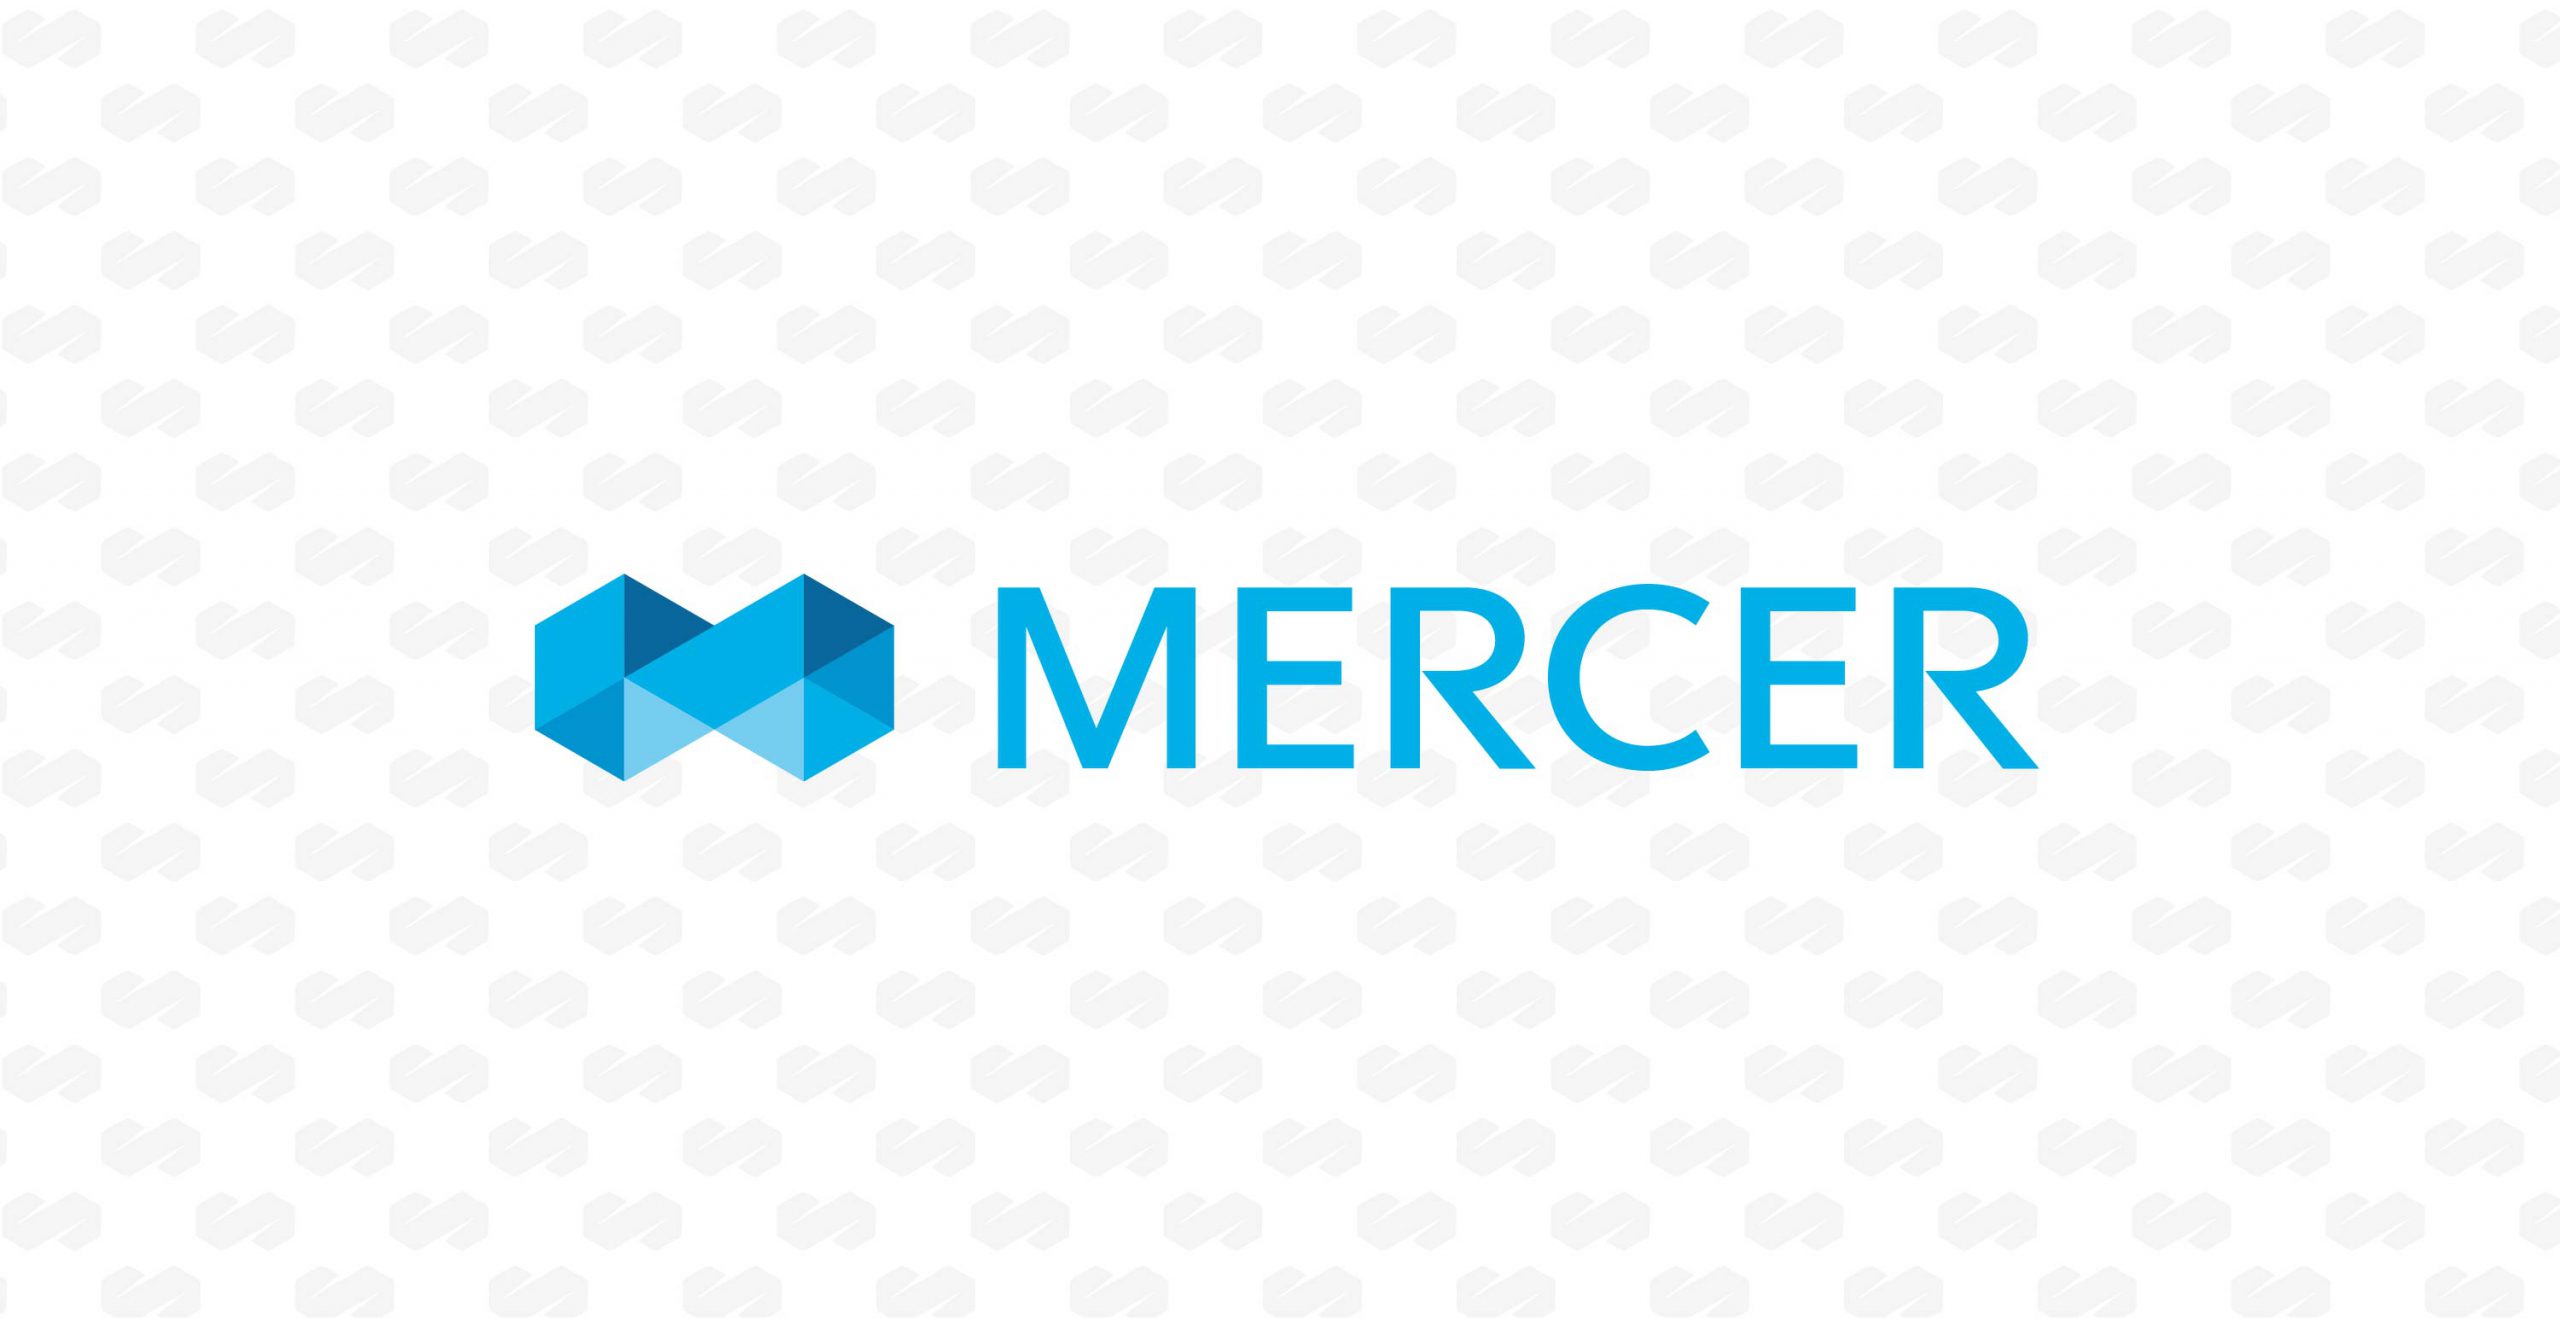 Mercer - logo on background